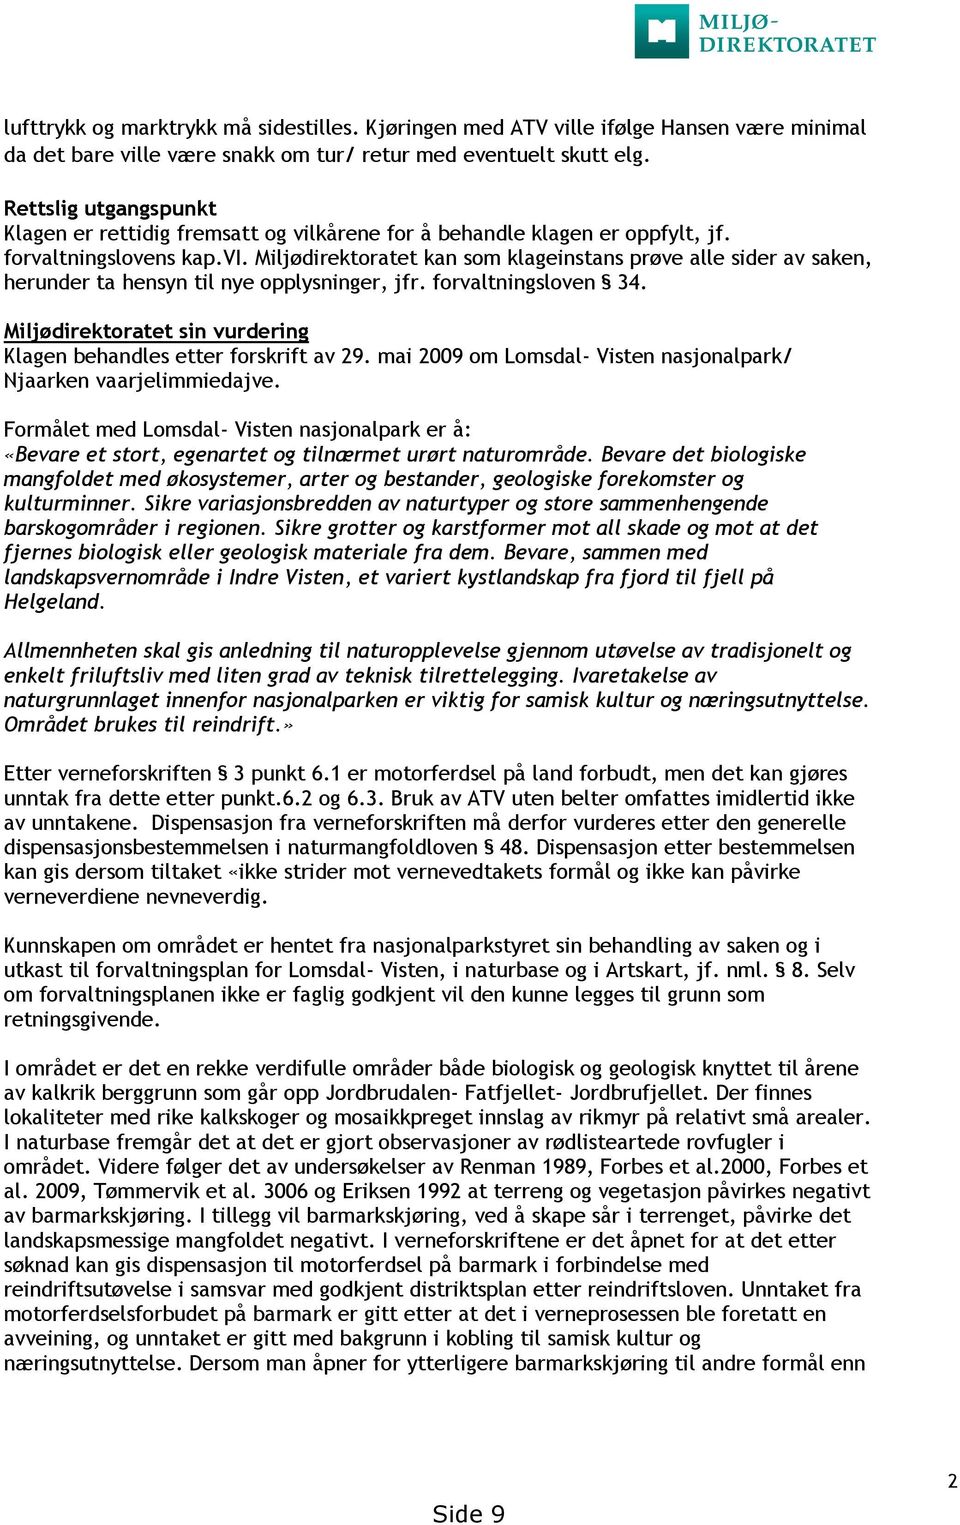 forvaltningsloven 34. Miljødirektoratet sin vurdering Klagen behandles etter forskrift av 29. mai 2009 om Lomsdal- Visten nasjonalpark/ Njaarken vaarjelimmiedajve.